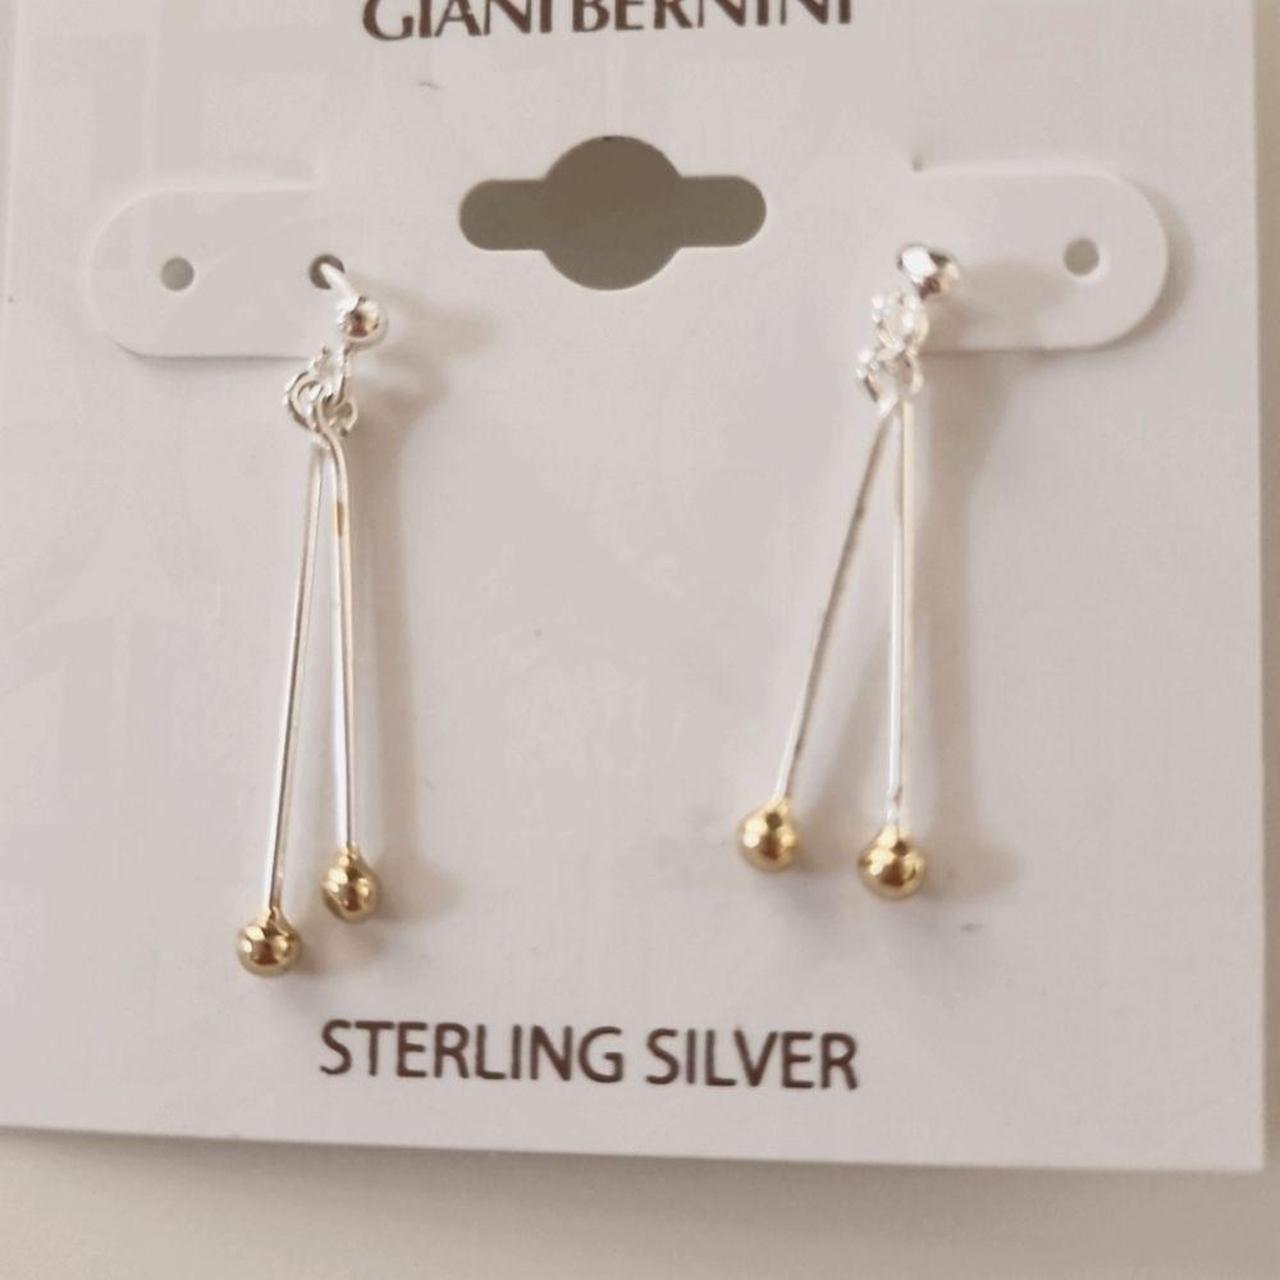 Giani Bernini sterling silver open teardrop - Depop